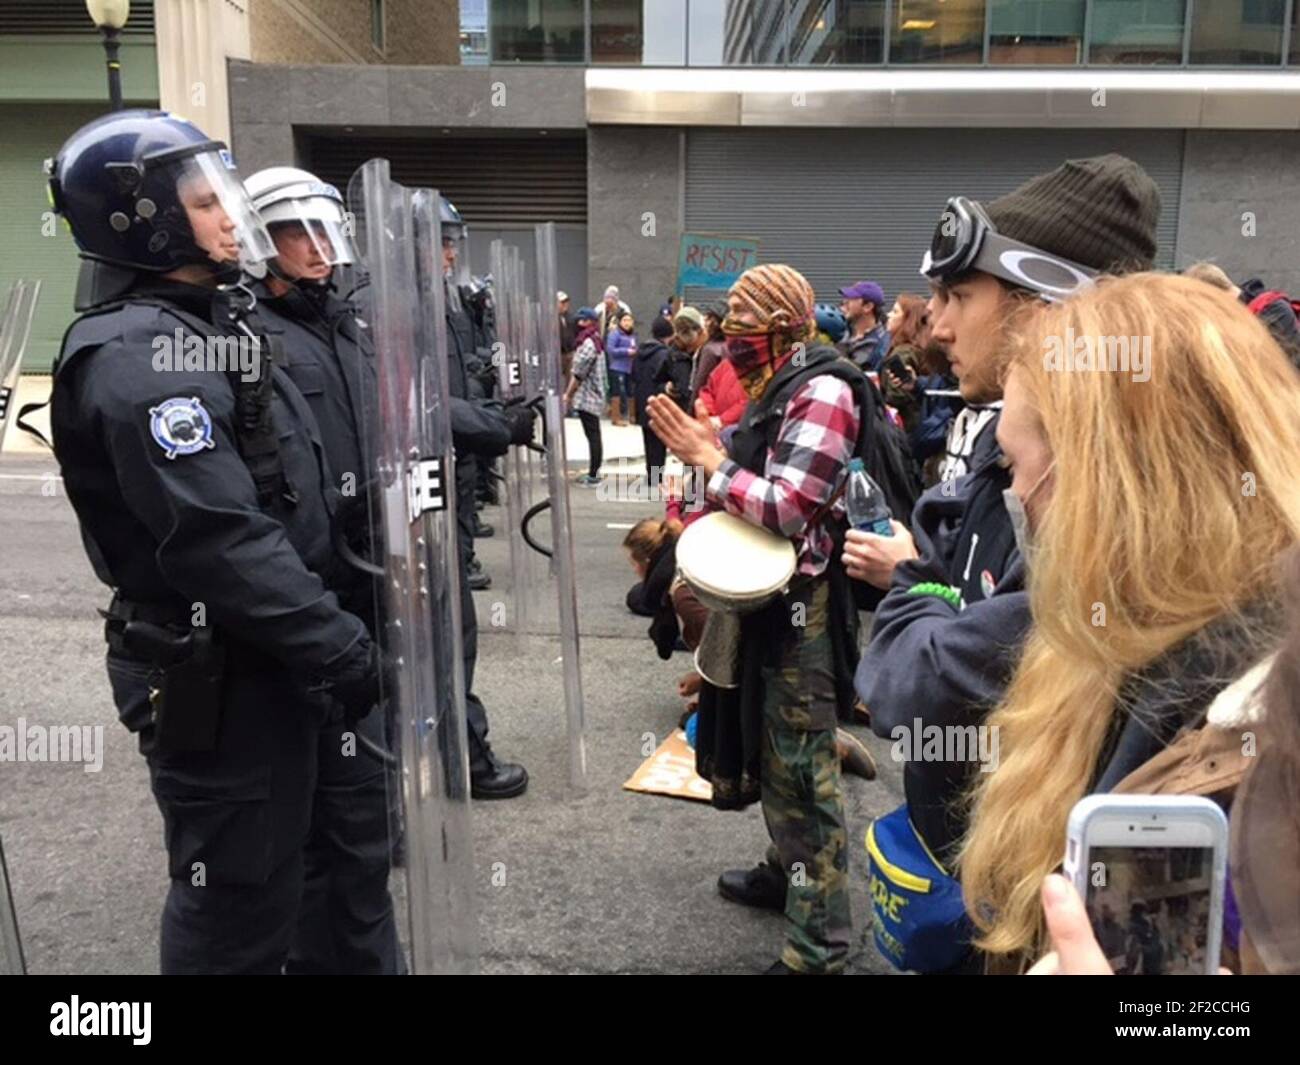 La police fait face aux manifestants alors que Donald Trump est assermenté comme 45e président des États-Unis à Washington, D.C., le 20 janvier 2017. Banque D'Images